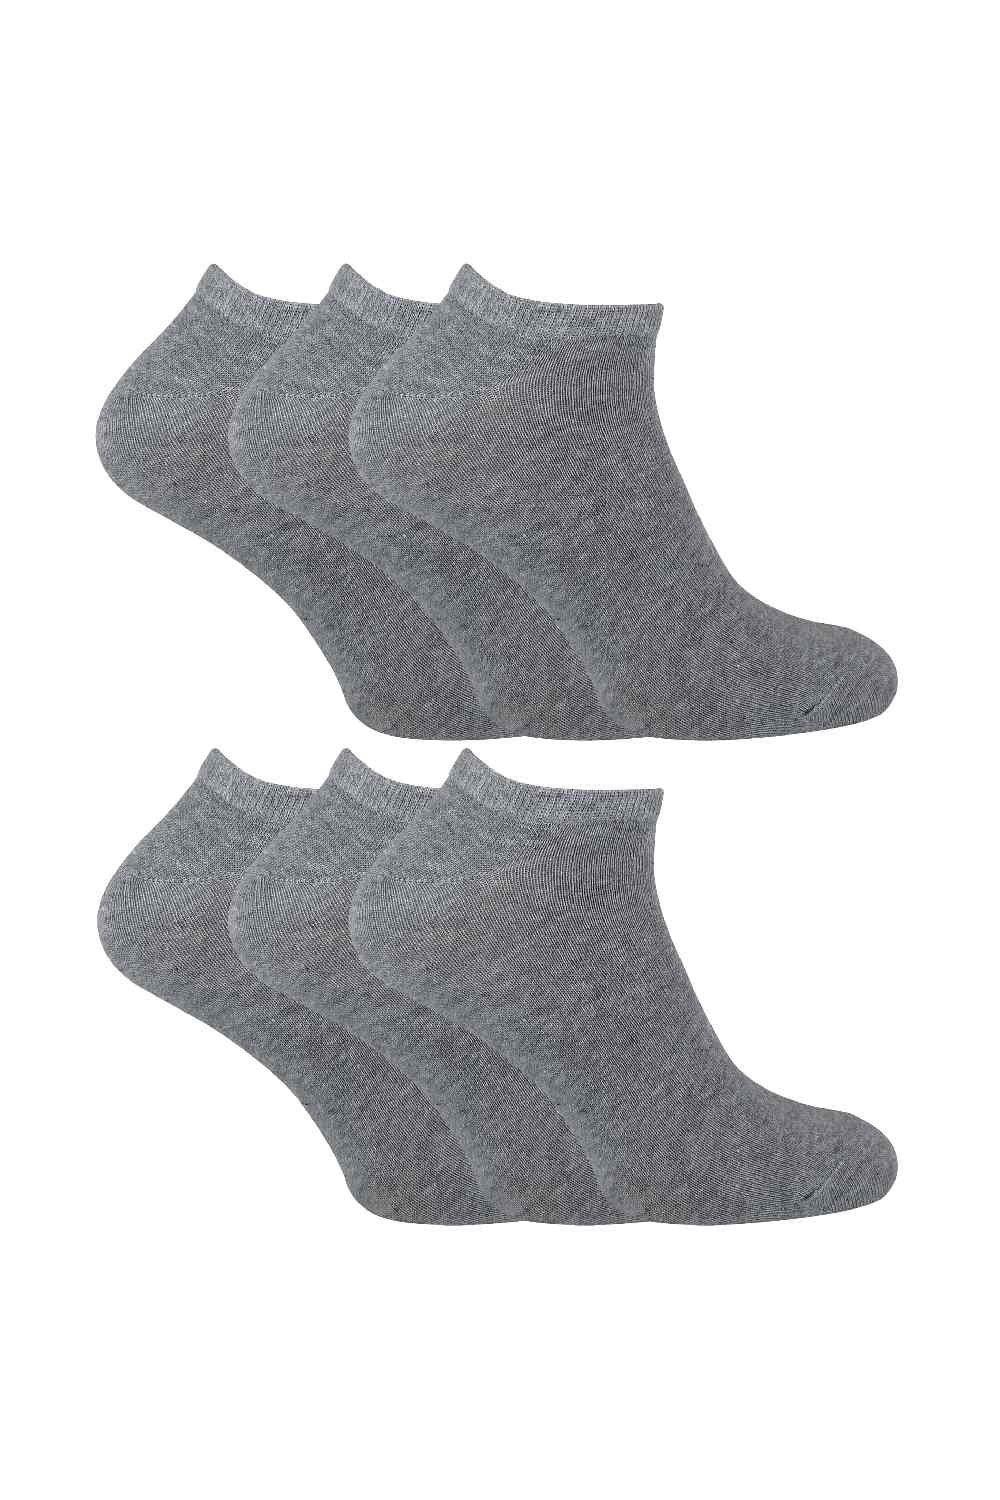 6 Pack Cotton Low Cut Quarter Gym Trainer Socks